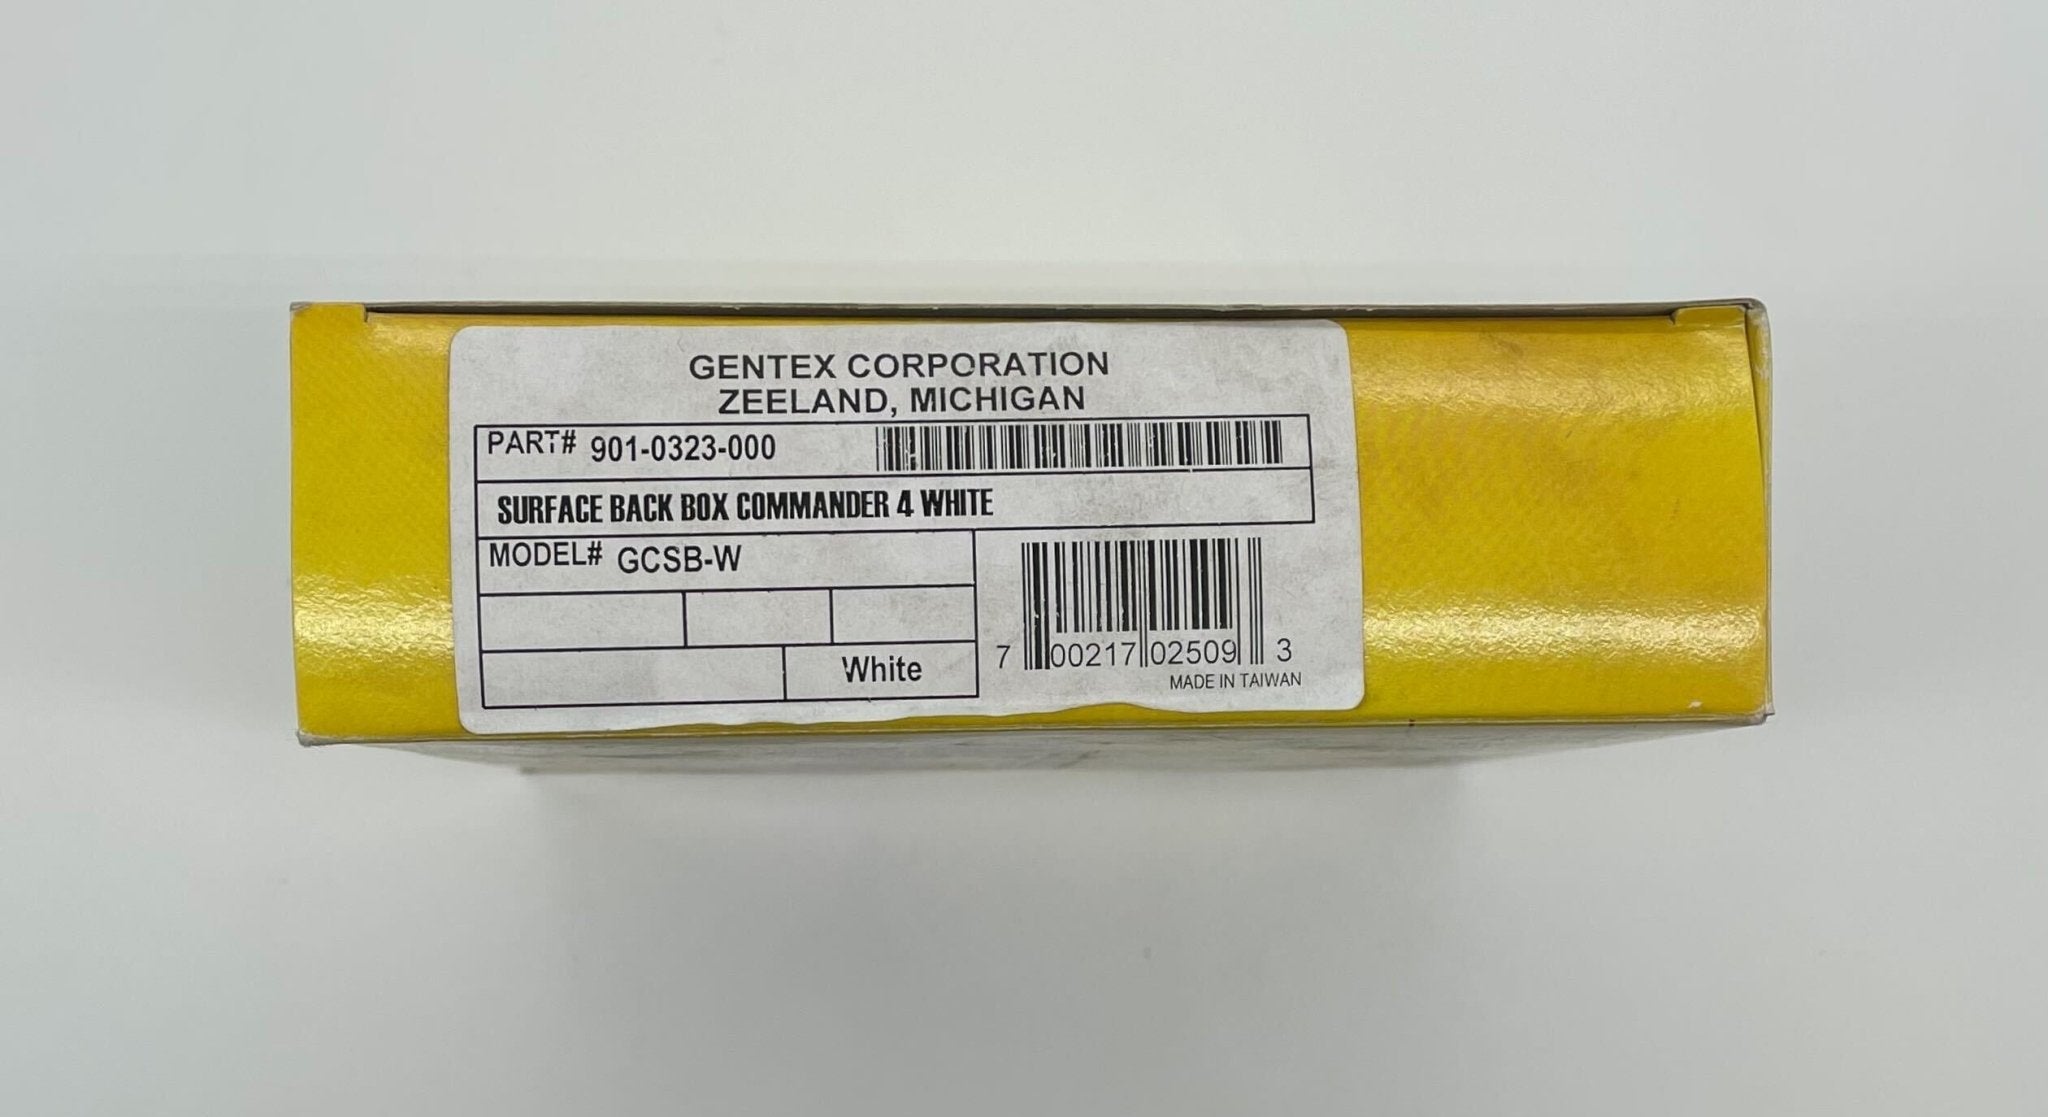 Gentex GCSB-W - The Fire Alarm Supplier